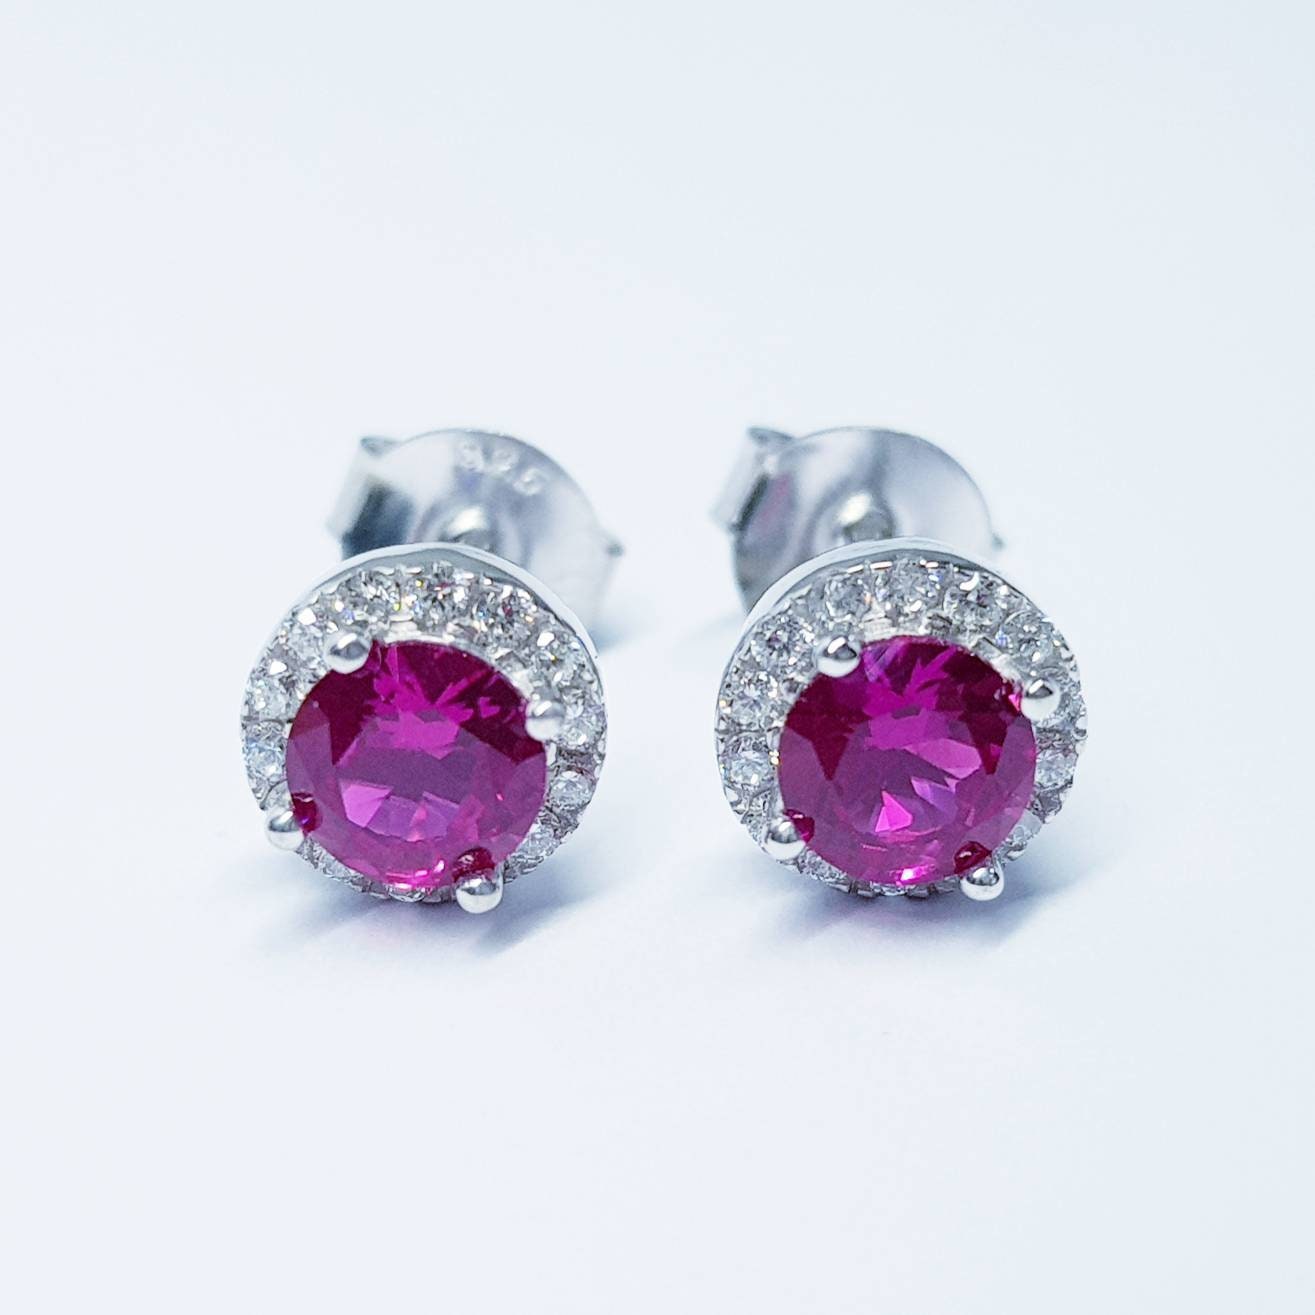 Red earrings, ruby stud earrings, gift for women, vintage earrings, diamond halo earrings, earrings for women, classic stud earrings